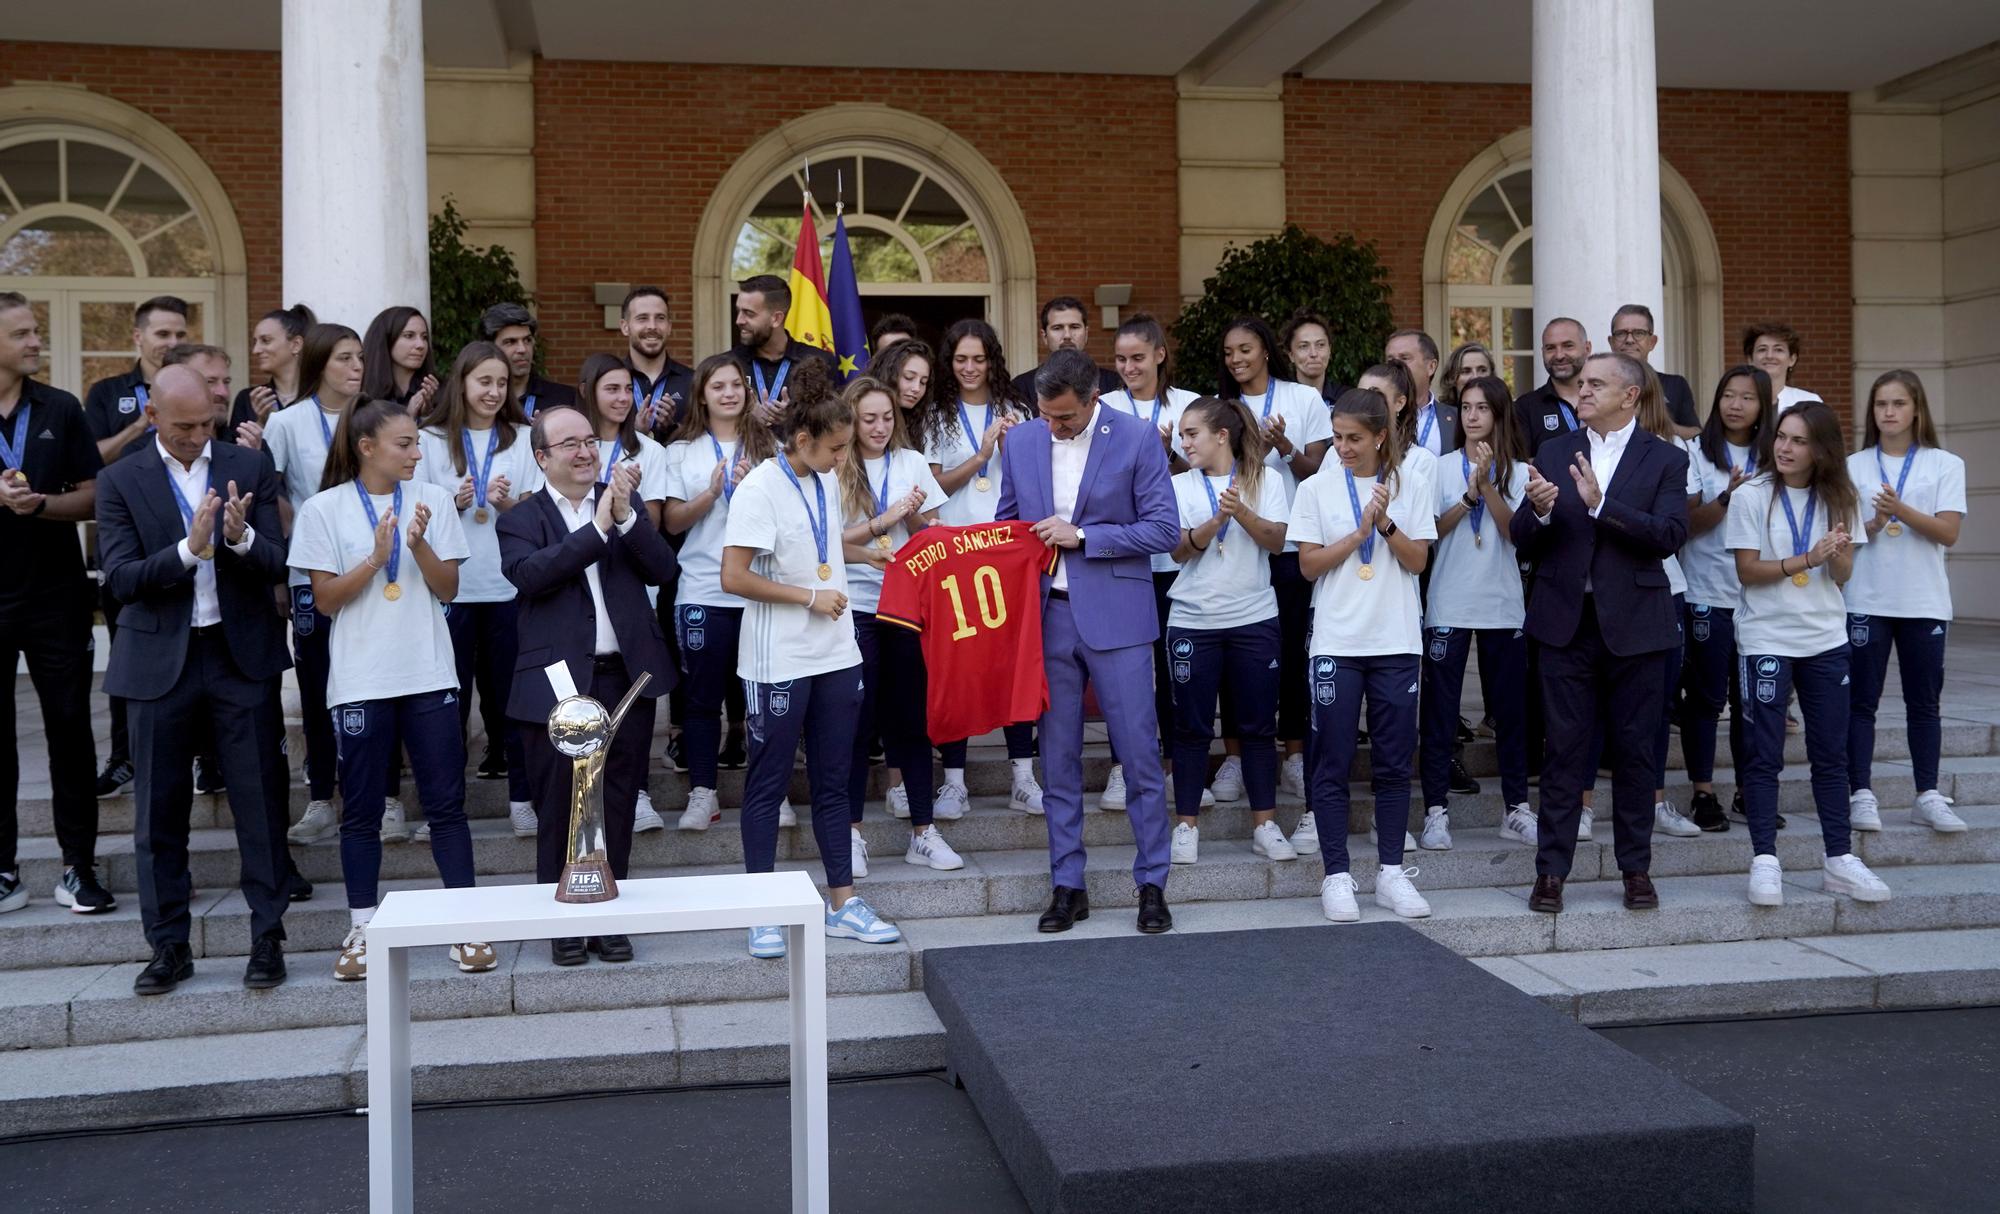 La recepción de Pedro Sánchez a la selección femenina Sub-20, en imágenes